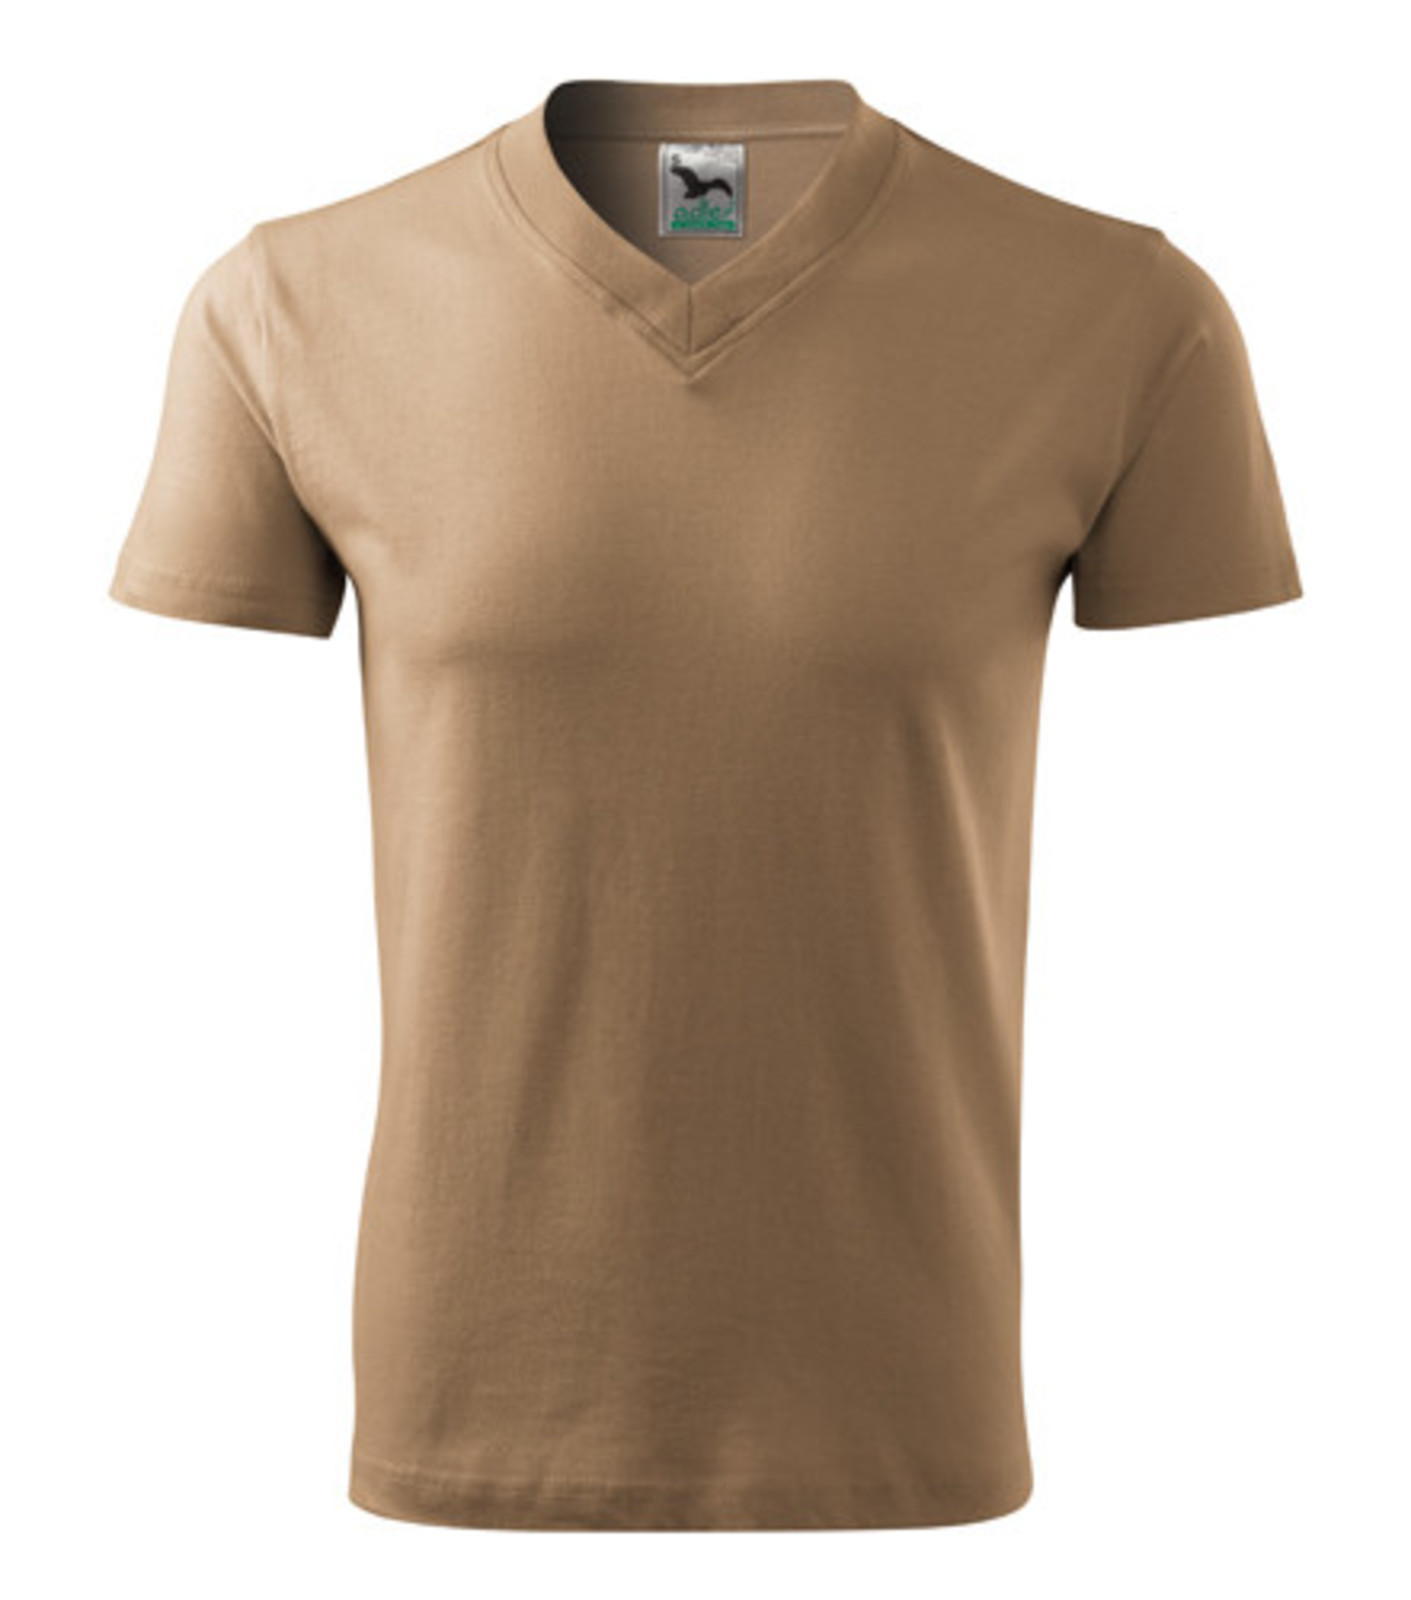 Unisex tričko s výstrihom Adler V-Neck 102 - veľkosť: M, farba: piesková